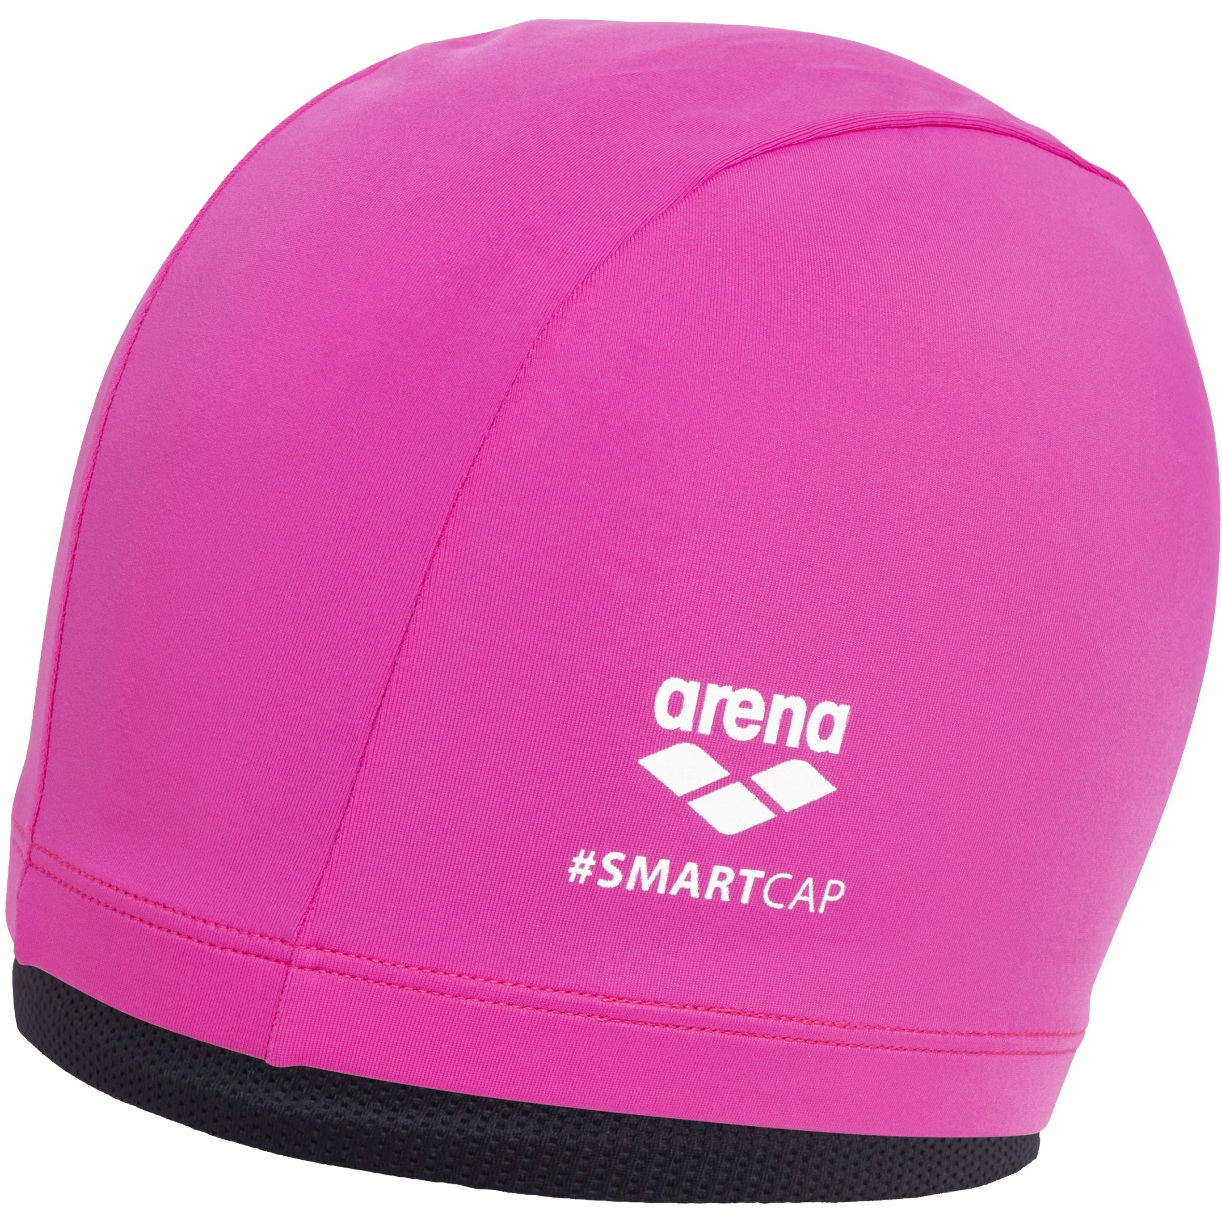 Image of arena Smartcap Swim Cap - Fuchsia